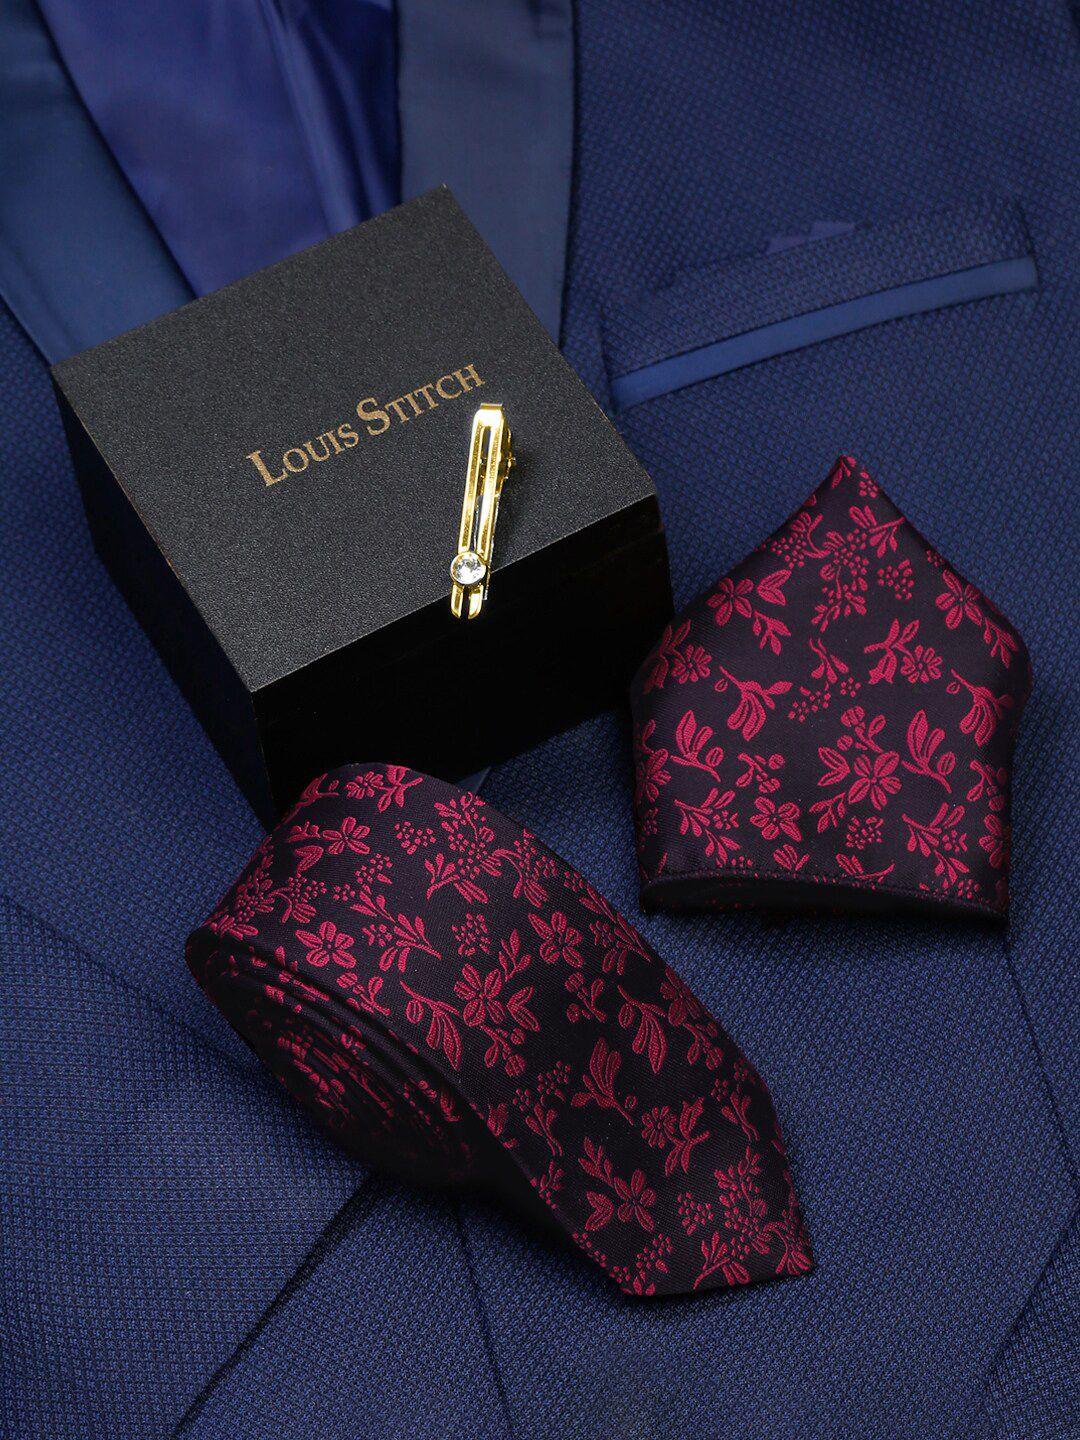 louis stitch men silk printed necktie accessory gift set